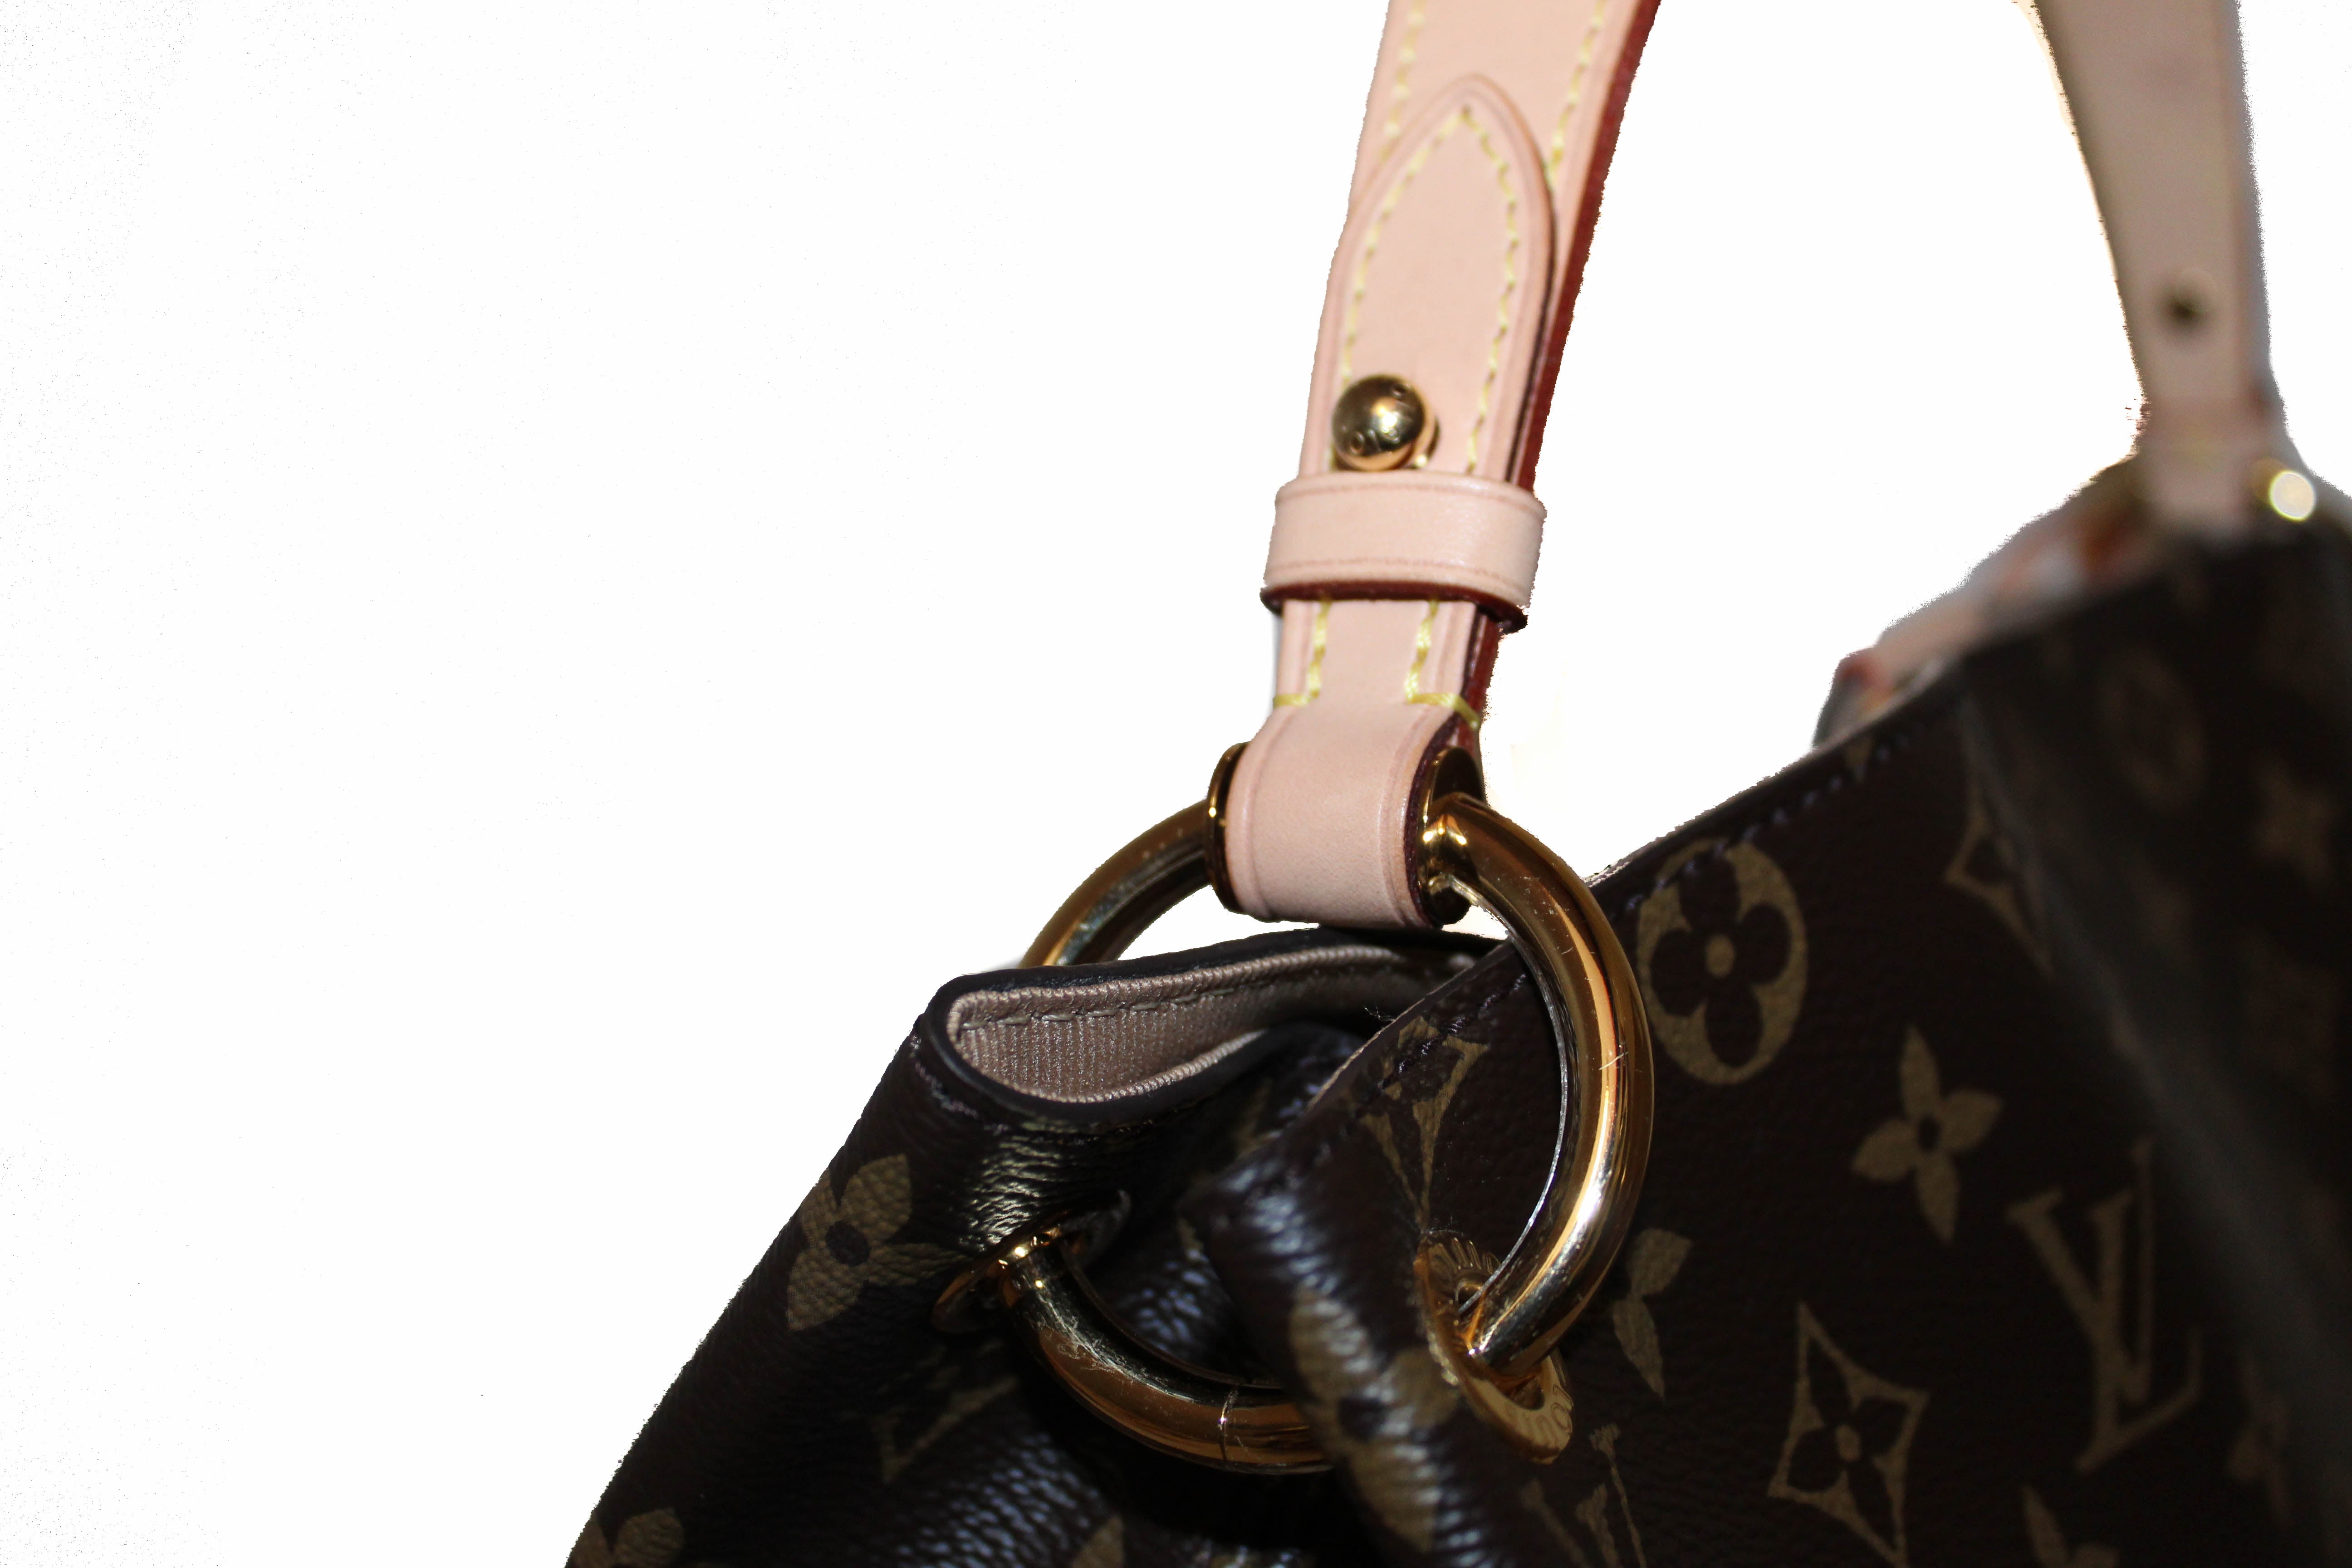 Authentic Louis Vuitton Classic Monogram Canvas Graceful PM Hobo Shoulder Bag